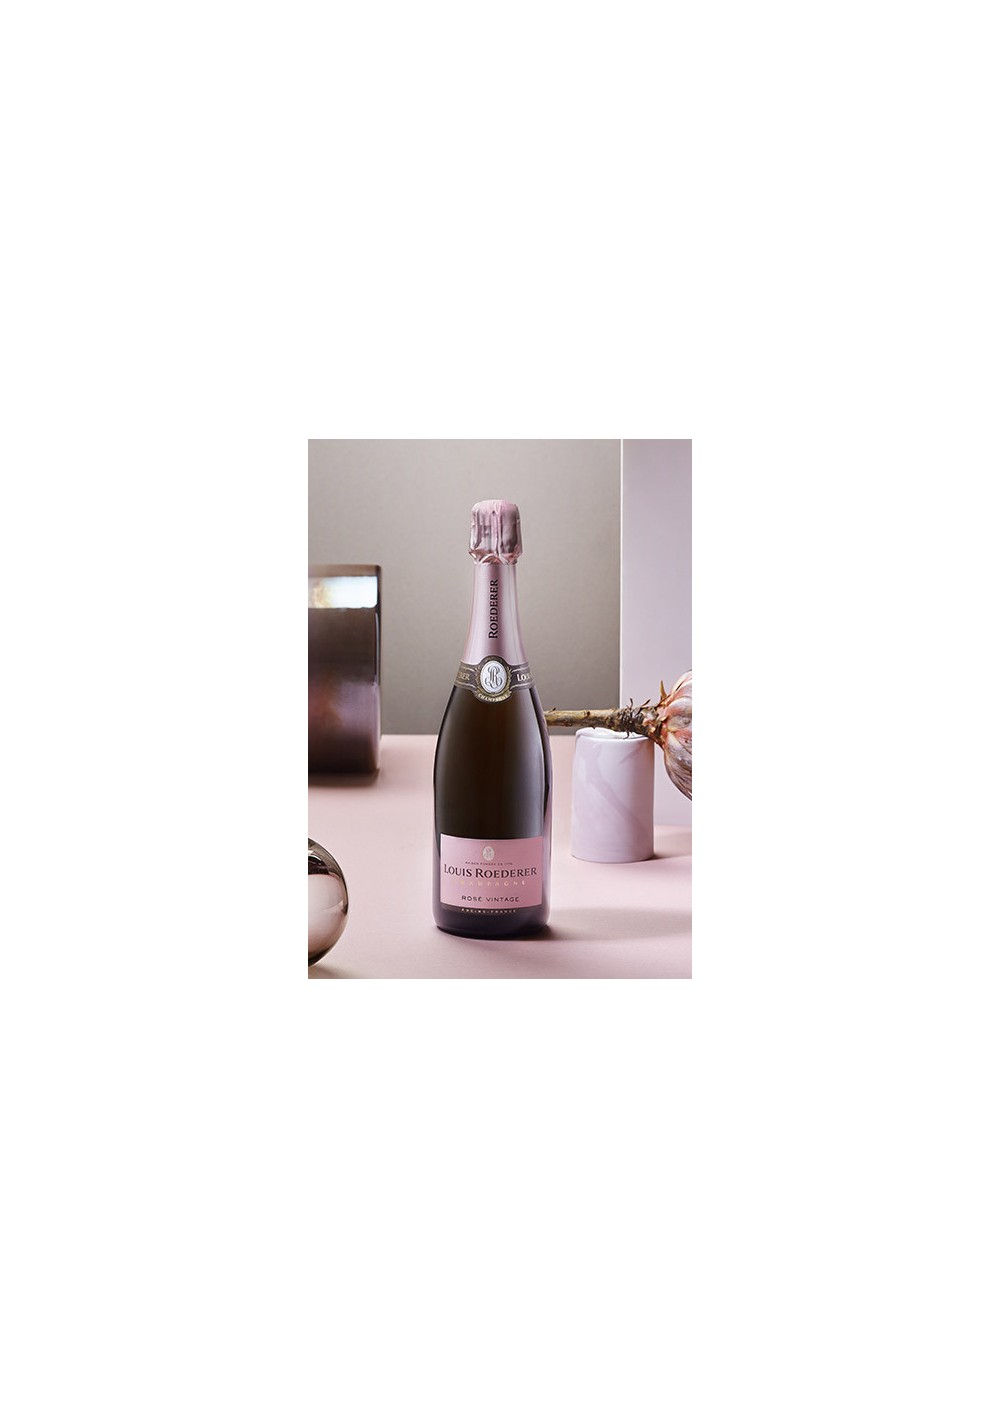 champagne Louis Roederer vintage 2014